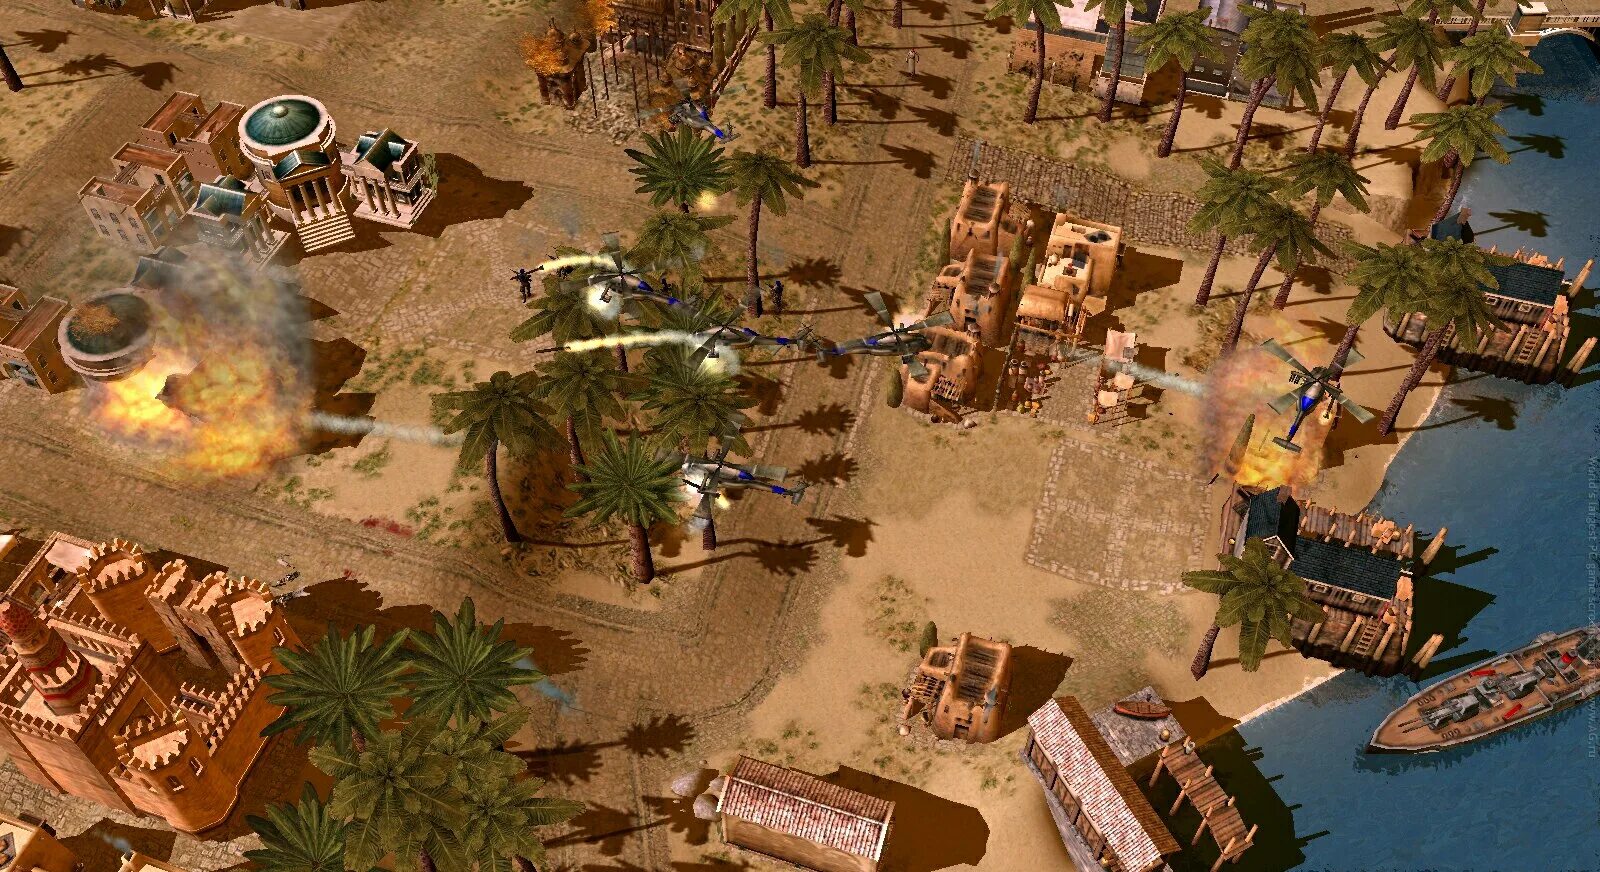 Игры взять землю 2. Empire Earth 2. Emria rarth 2. Empire Earth 2 Скриншоты. Игра Эмпайр еарт.